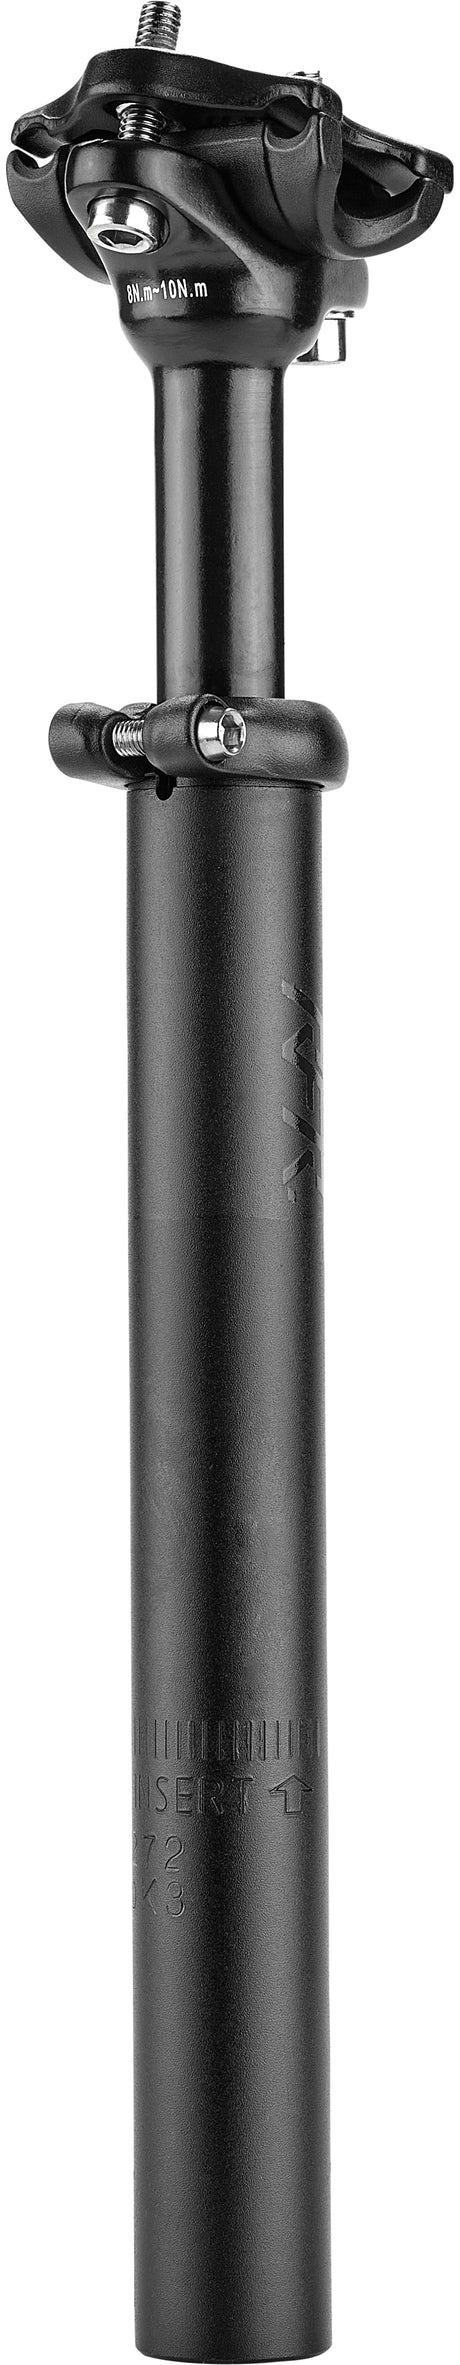 RFR verende zadelpen (60 - 90 kg) zwart